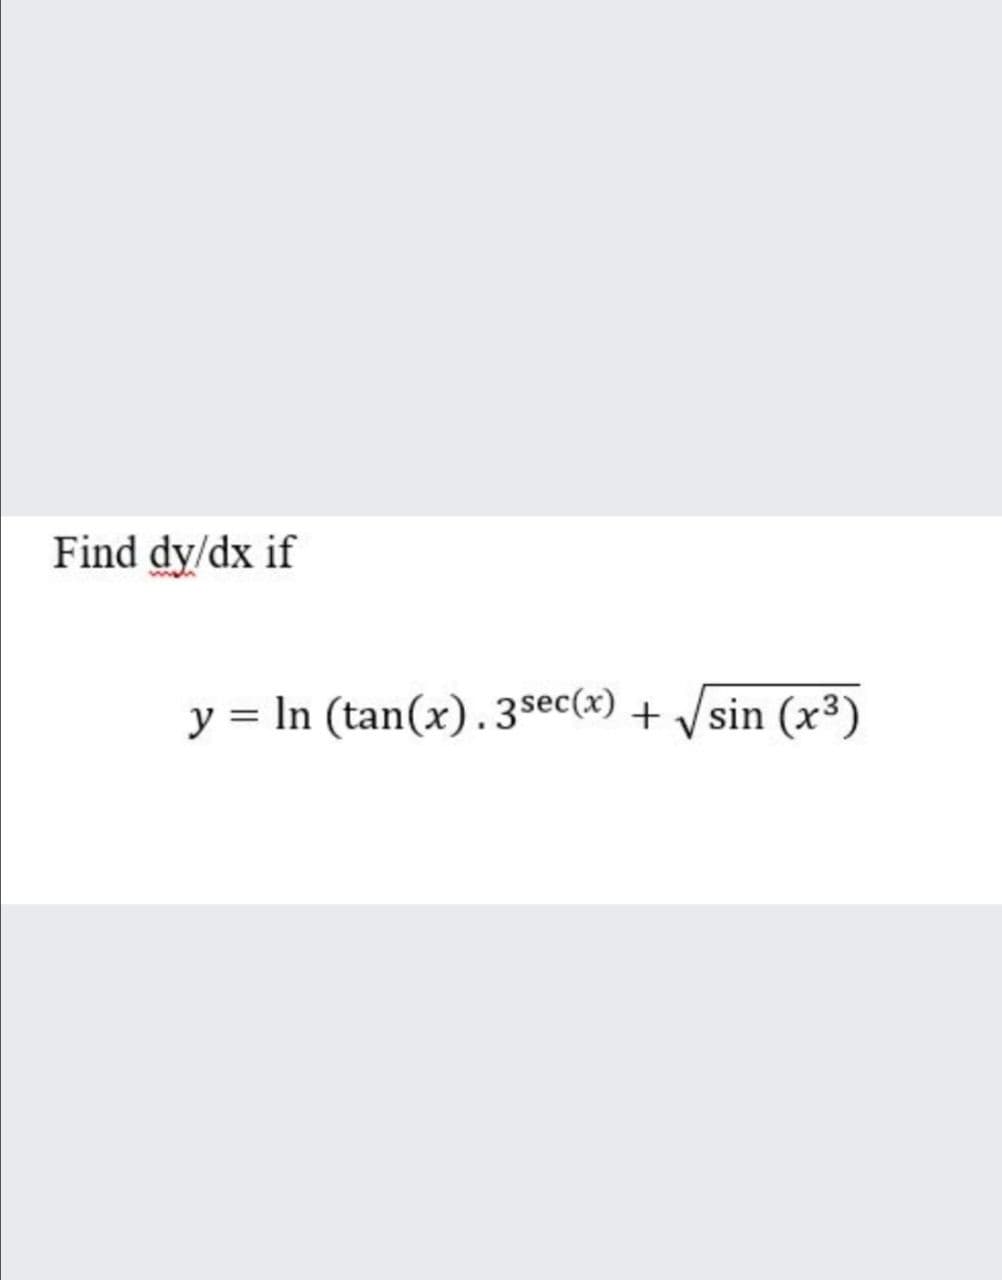 Find dy/dx if
y = In (tan(x).3sec(x) + /sin (x³)
